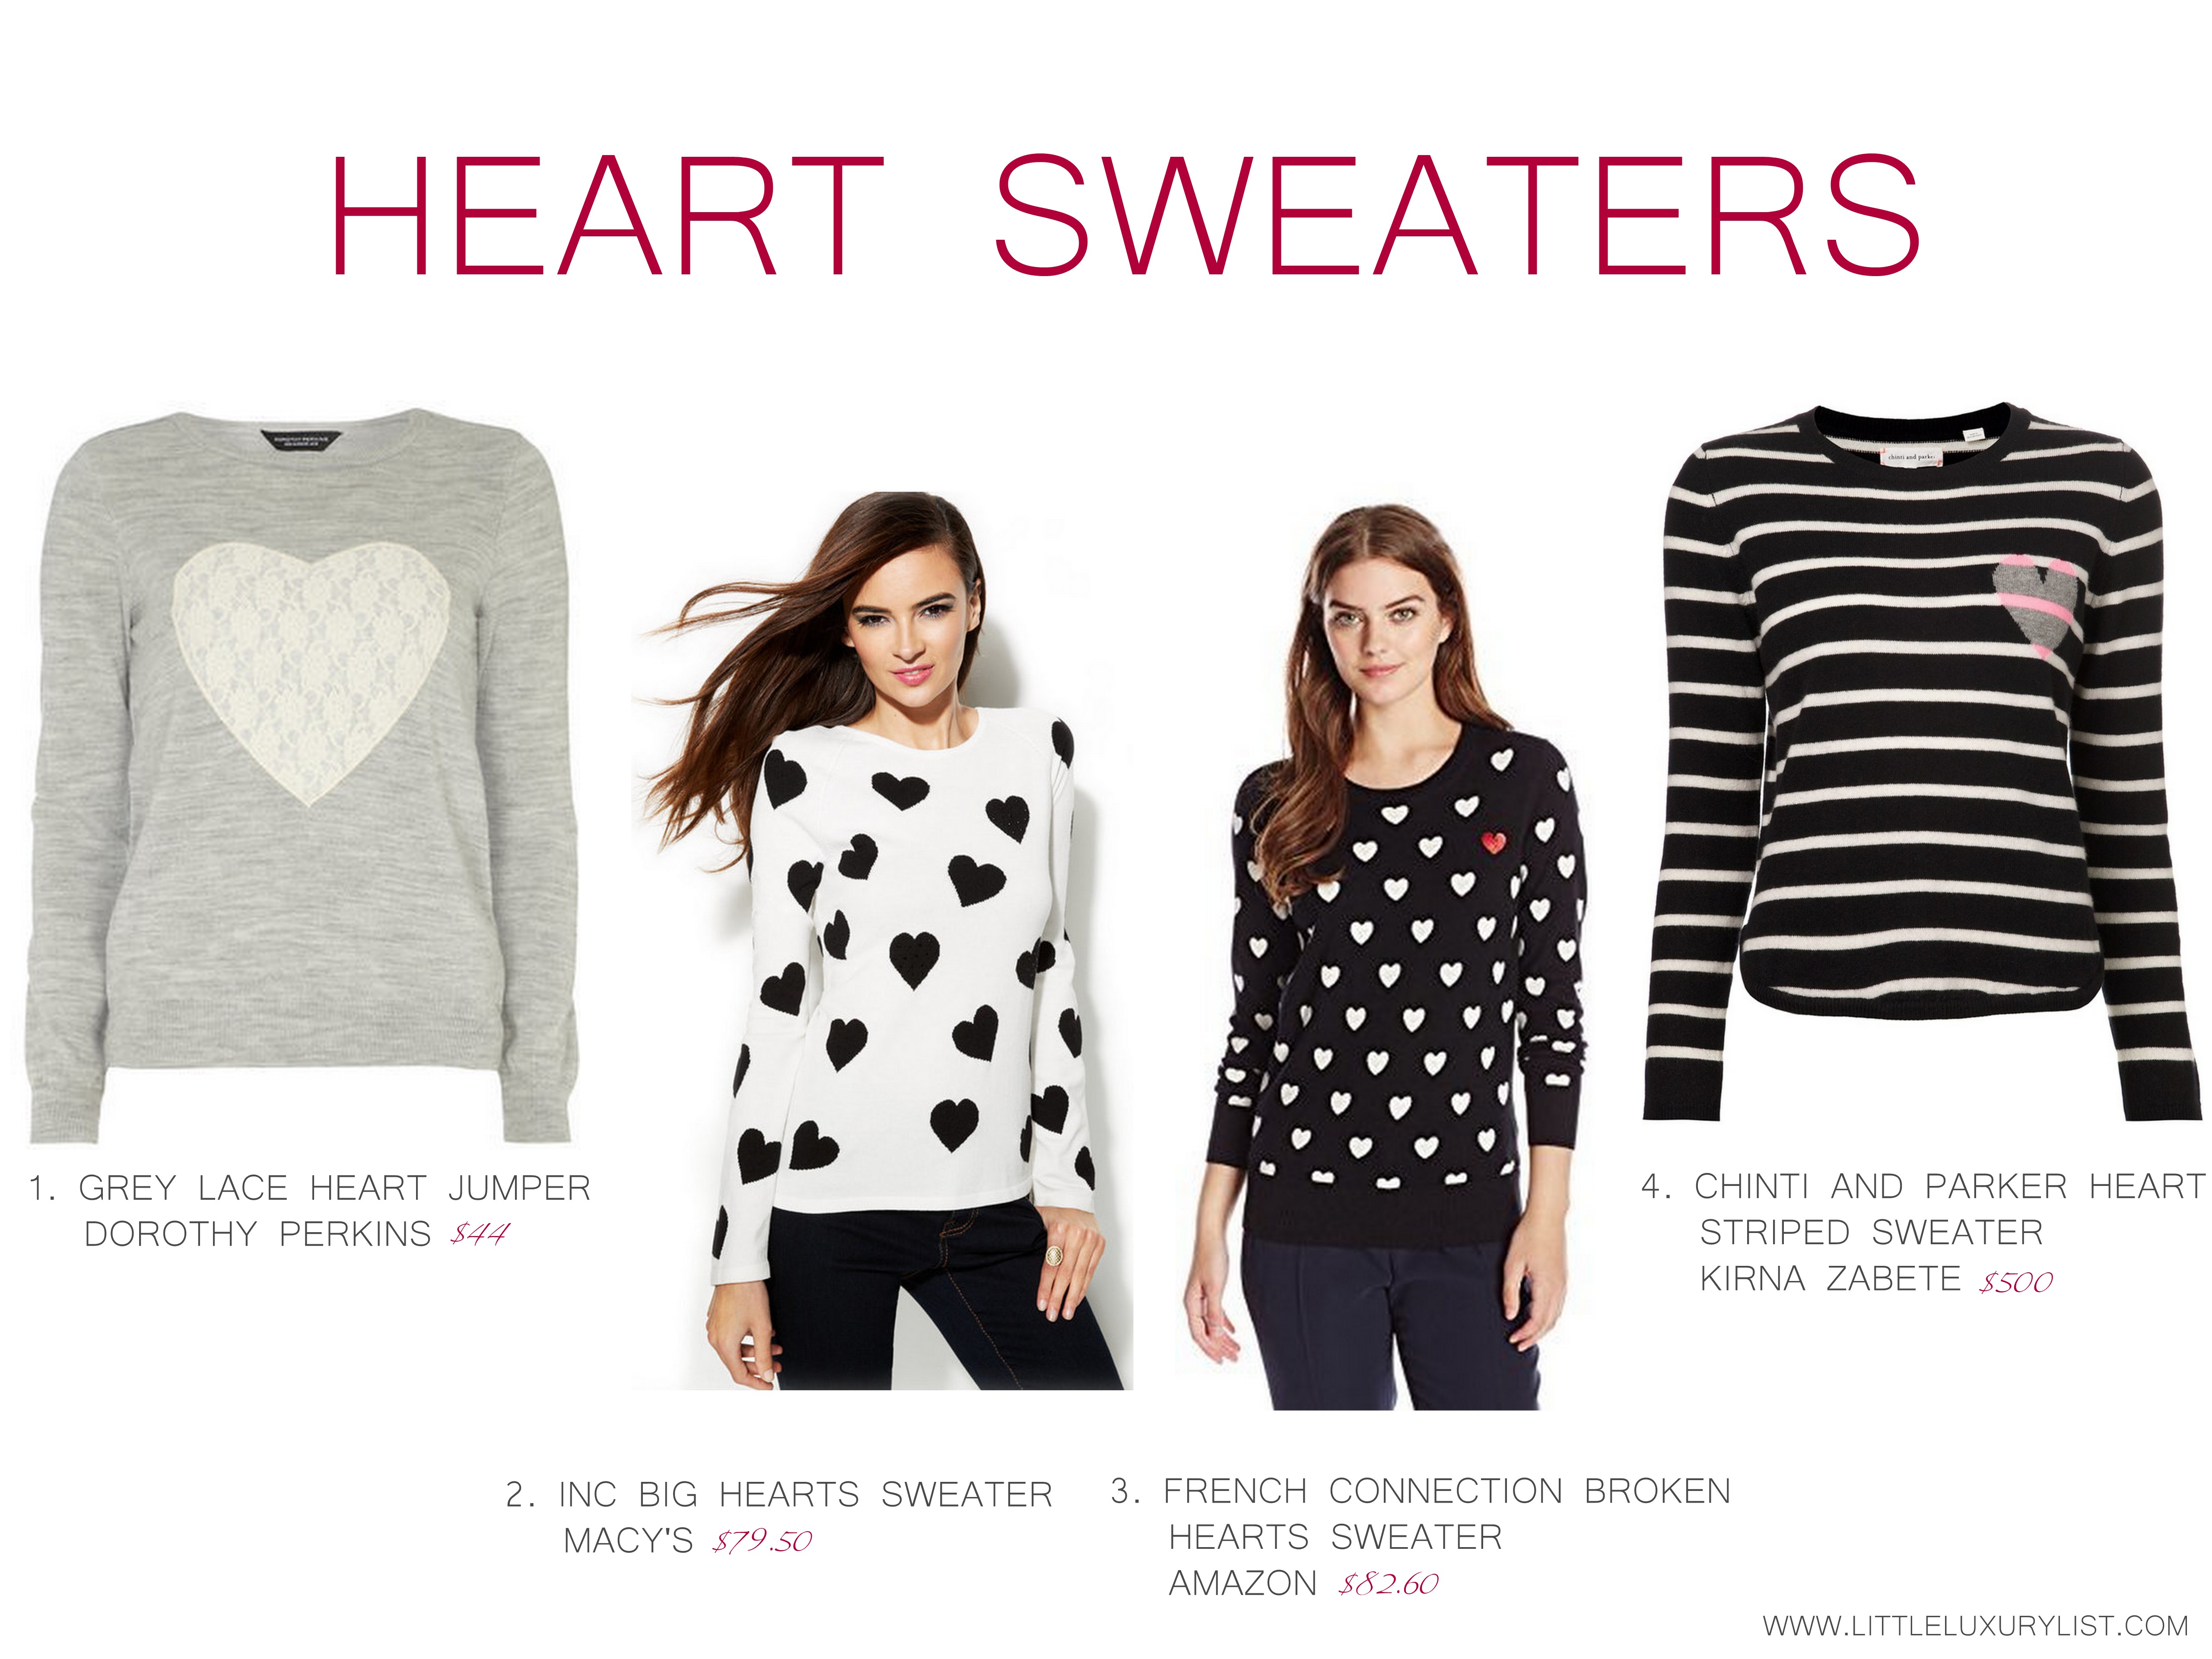 Heart sweaters by little luxury list